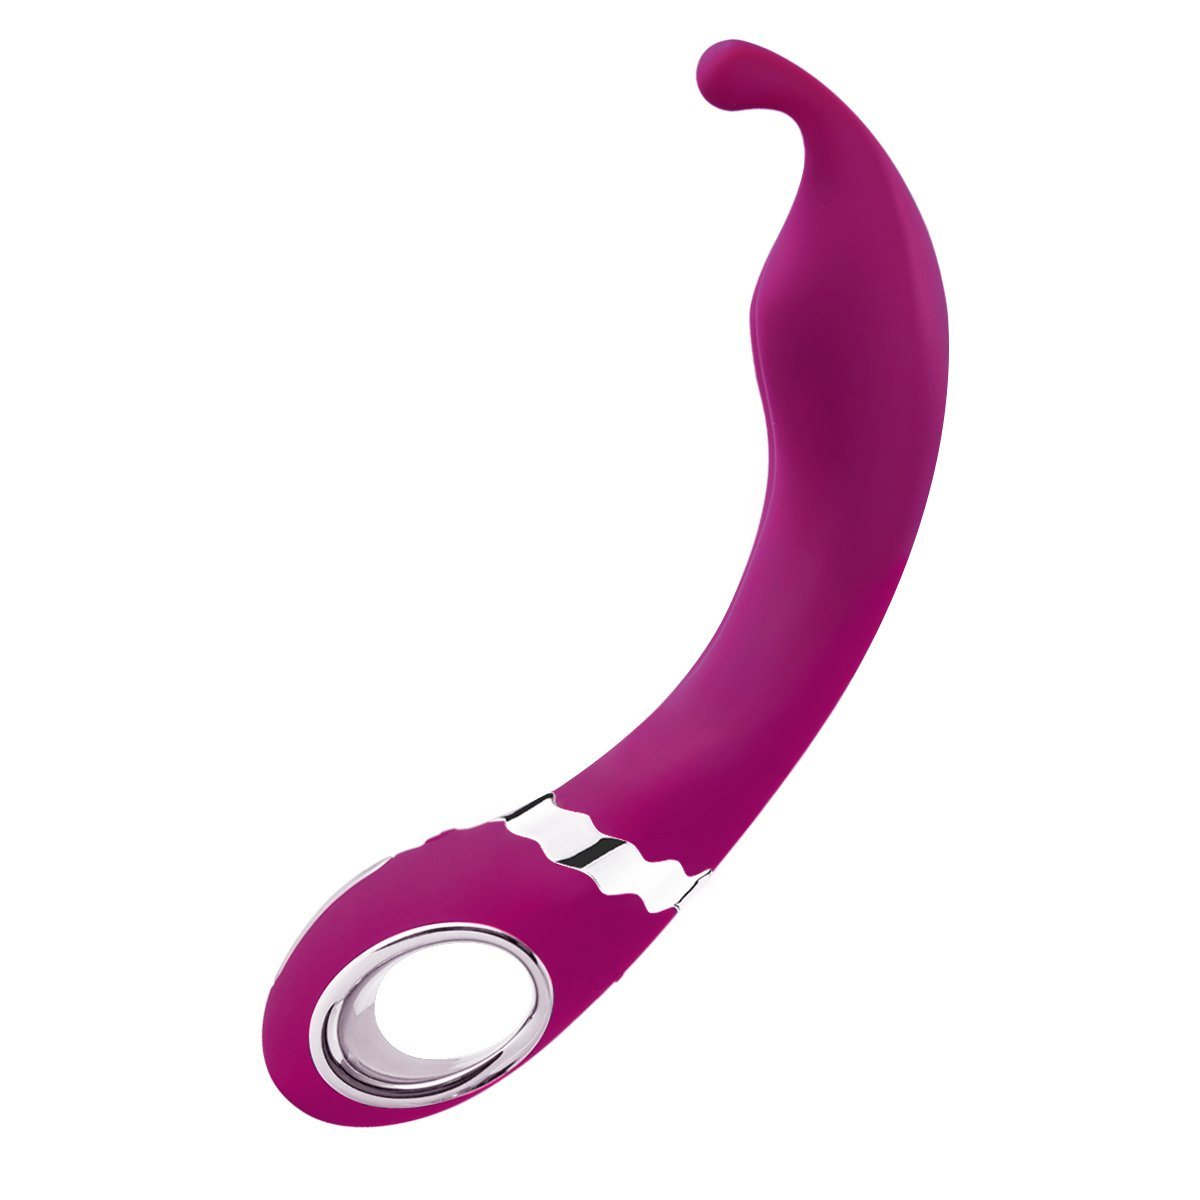 NOMI TANG Tease Twitch the clitoris G-spot vibrator G-spot vibrator